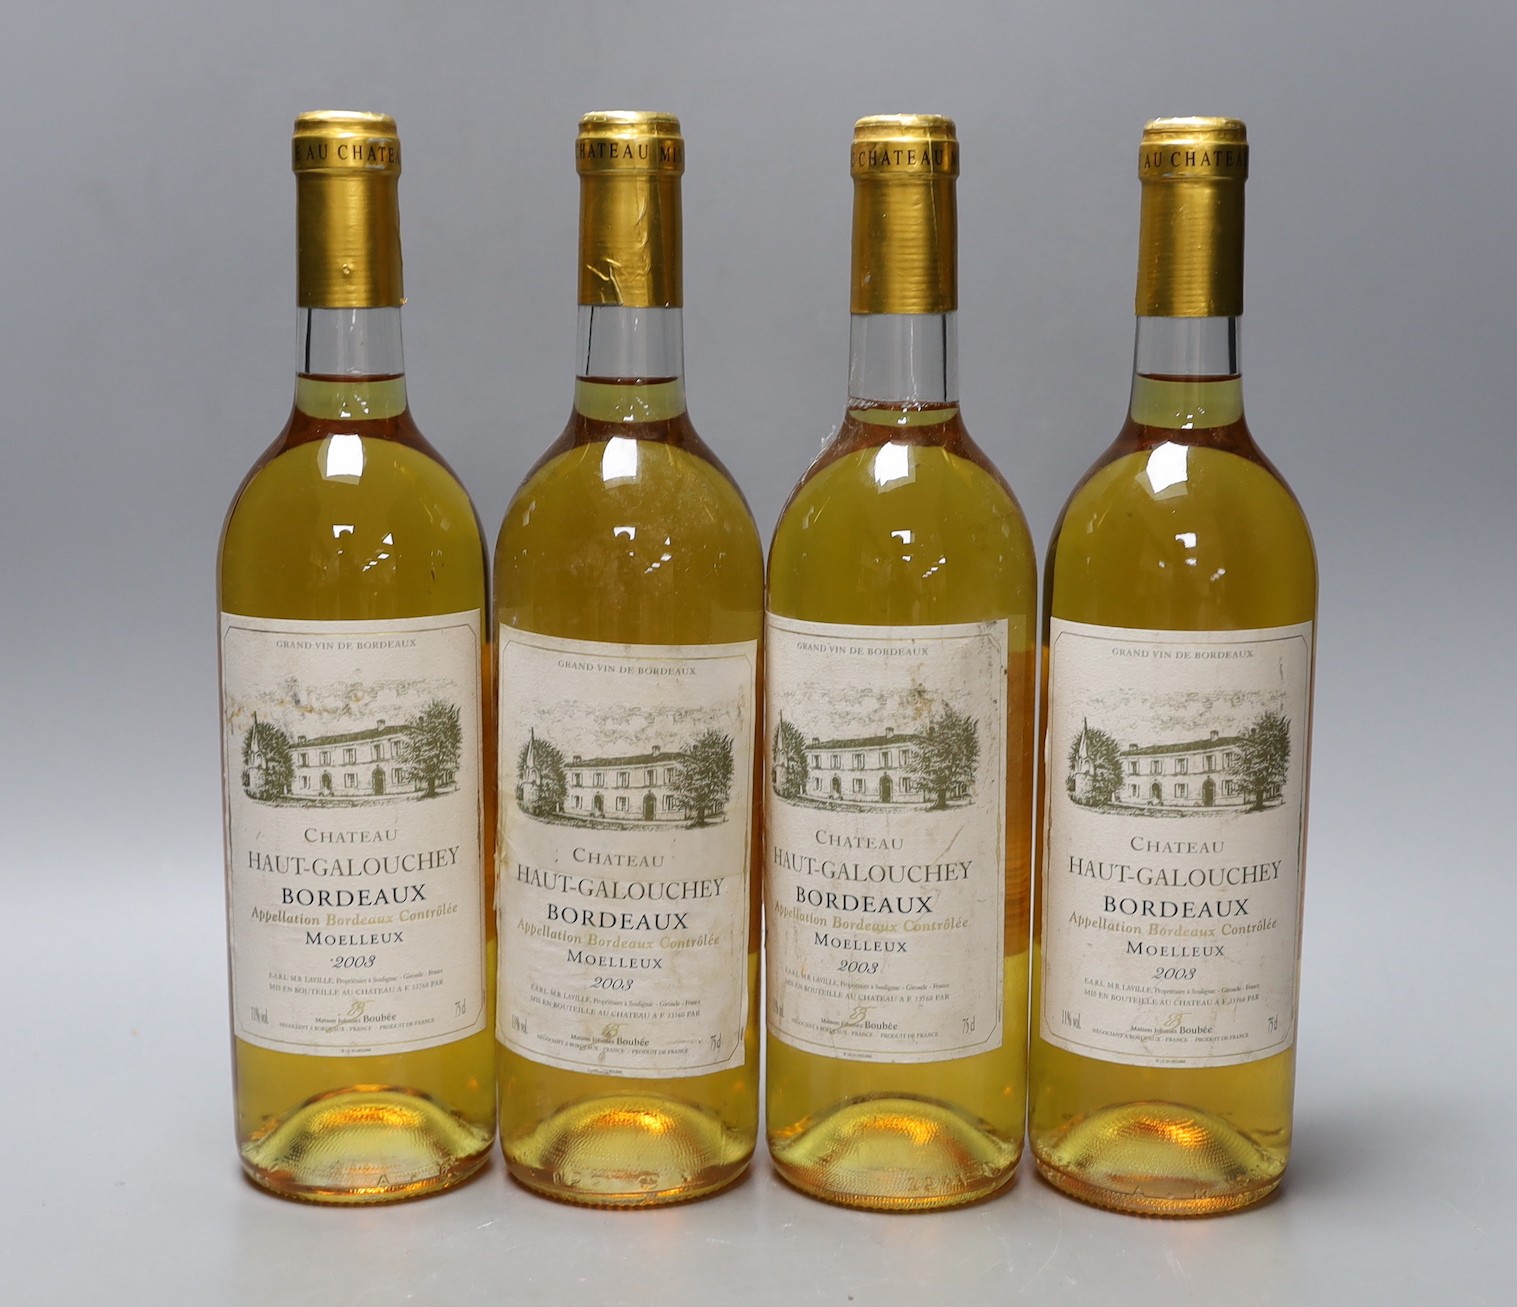 4 bottles of Chateau Haut Galouchey Bordeaux 2003